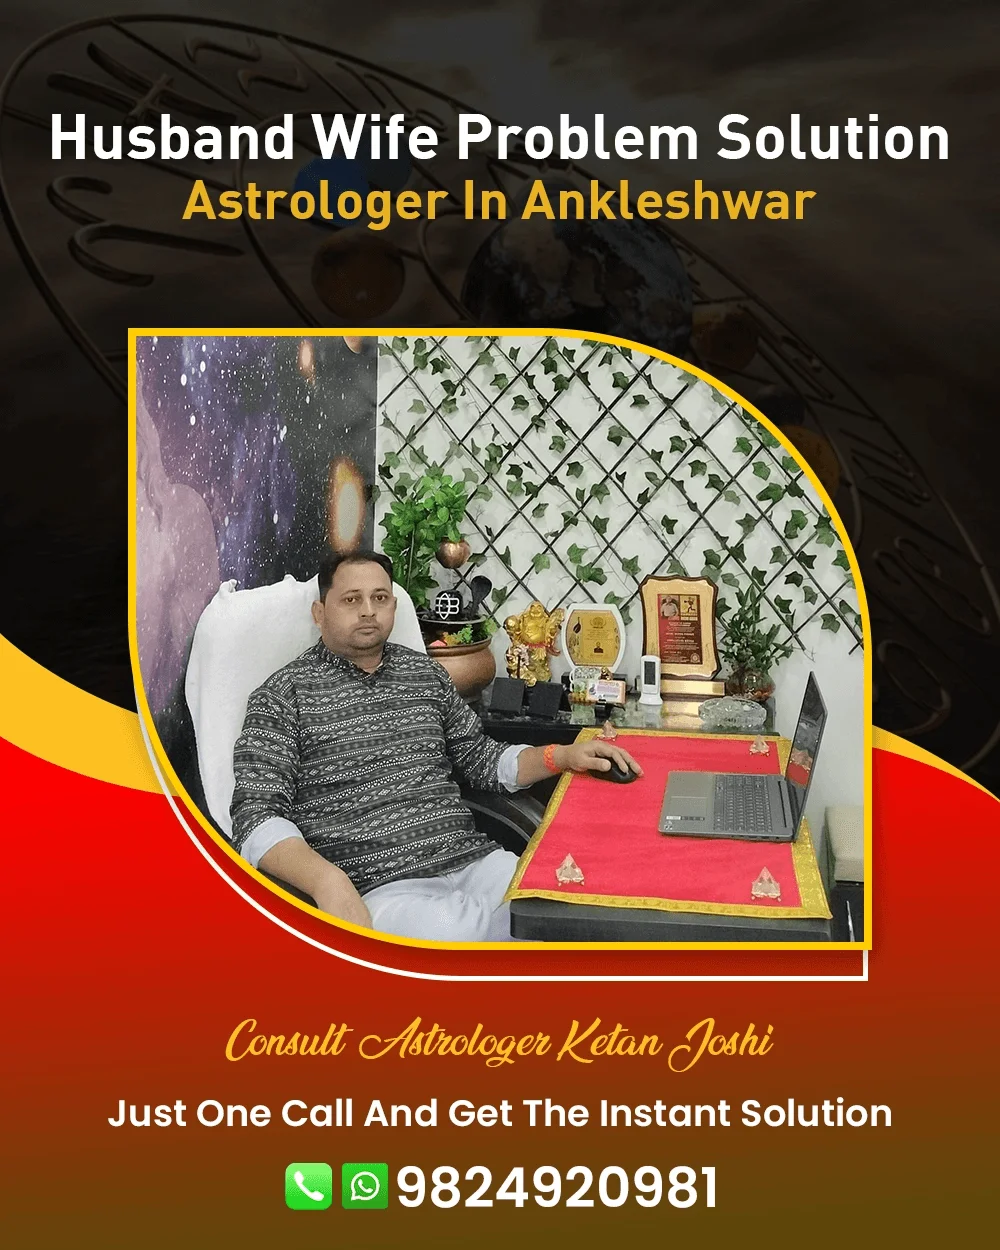 Husband Wife Problem Solution Astrologer In Ankleshwar